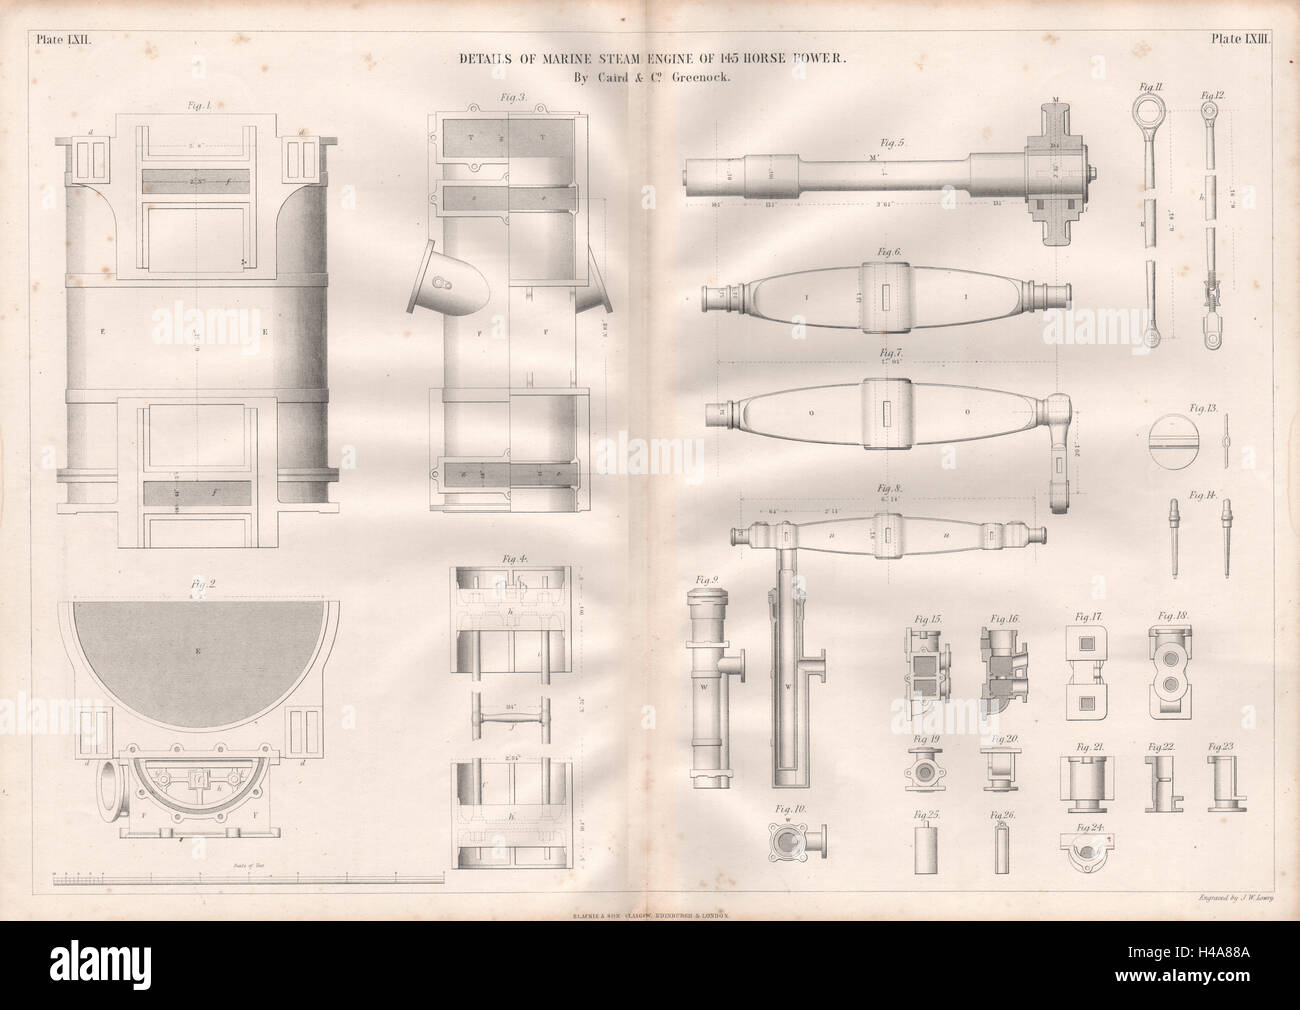 19C DESSIN TECHNIQUE. Moteur à vapeur pour bateaux 145 ch plus de détails. Caird & Co., 1847 Banque D'Images